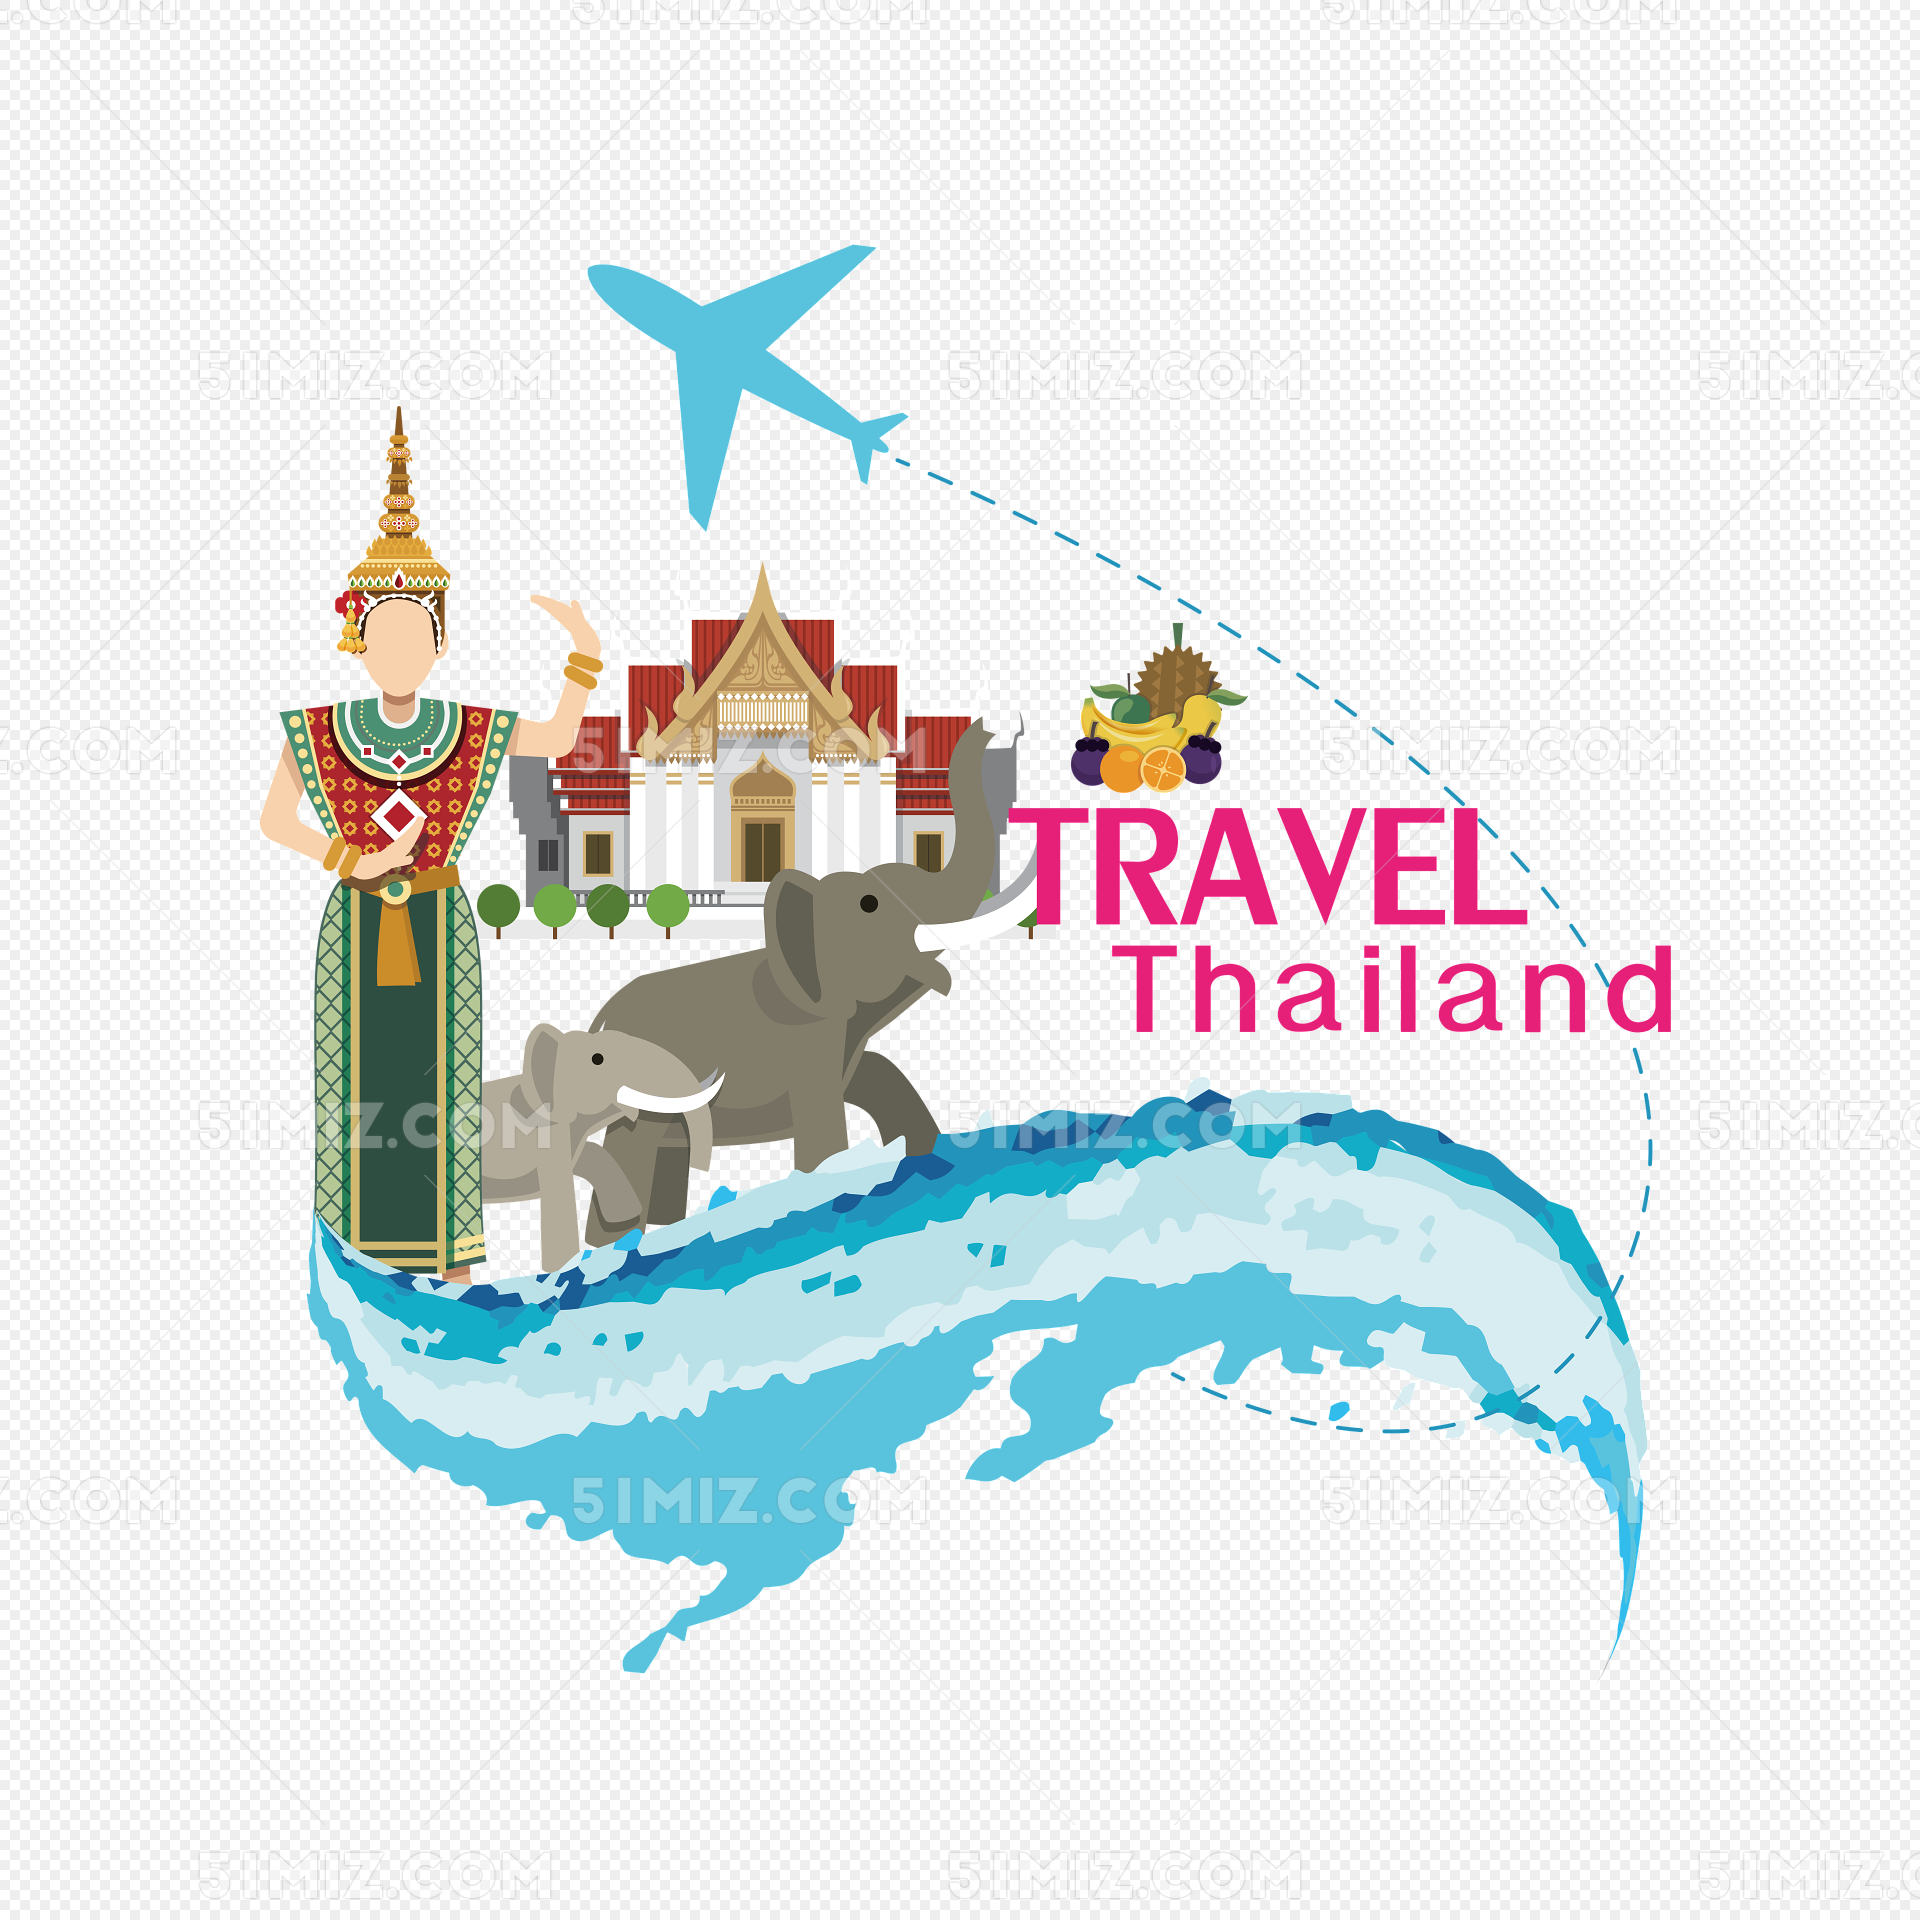 泰国举行欢迎仪式迎接中国旅客 - Chinadaily.com.cn